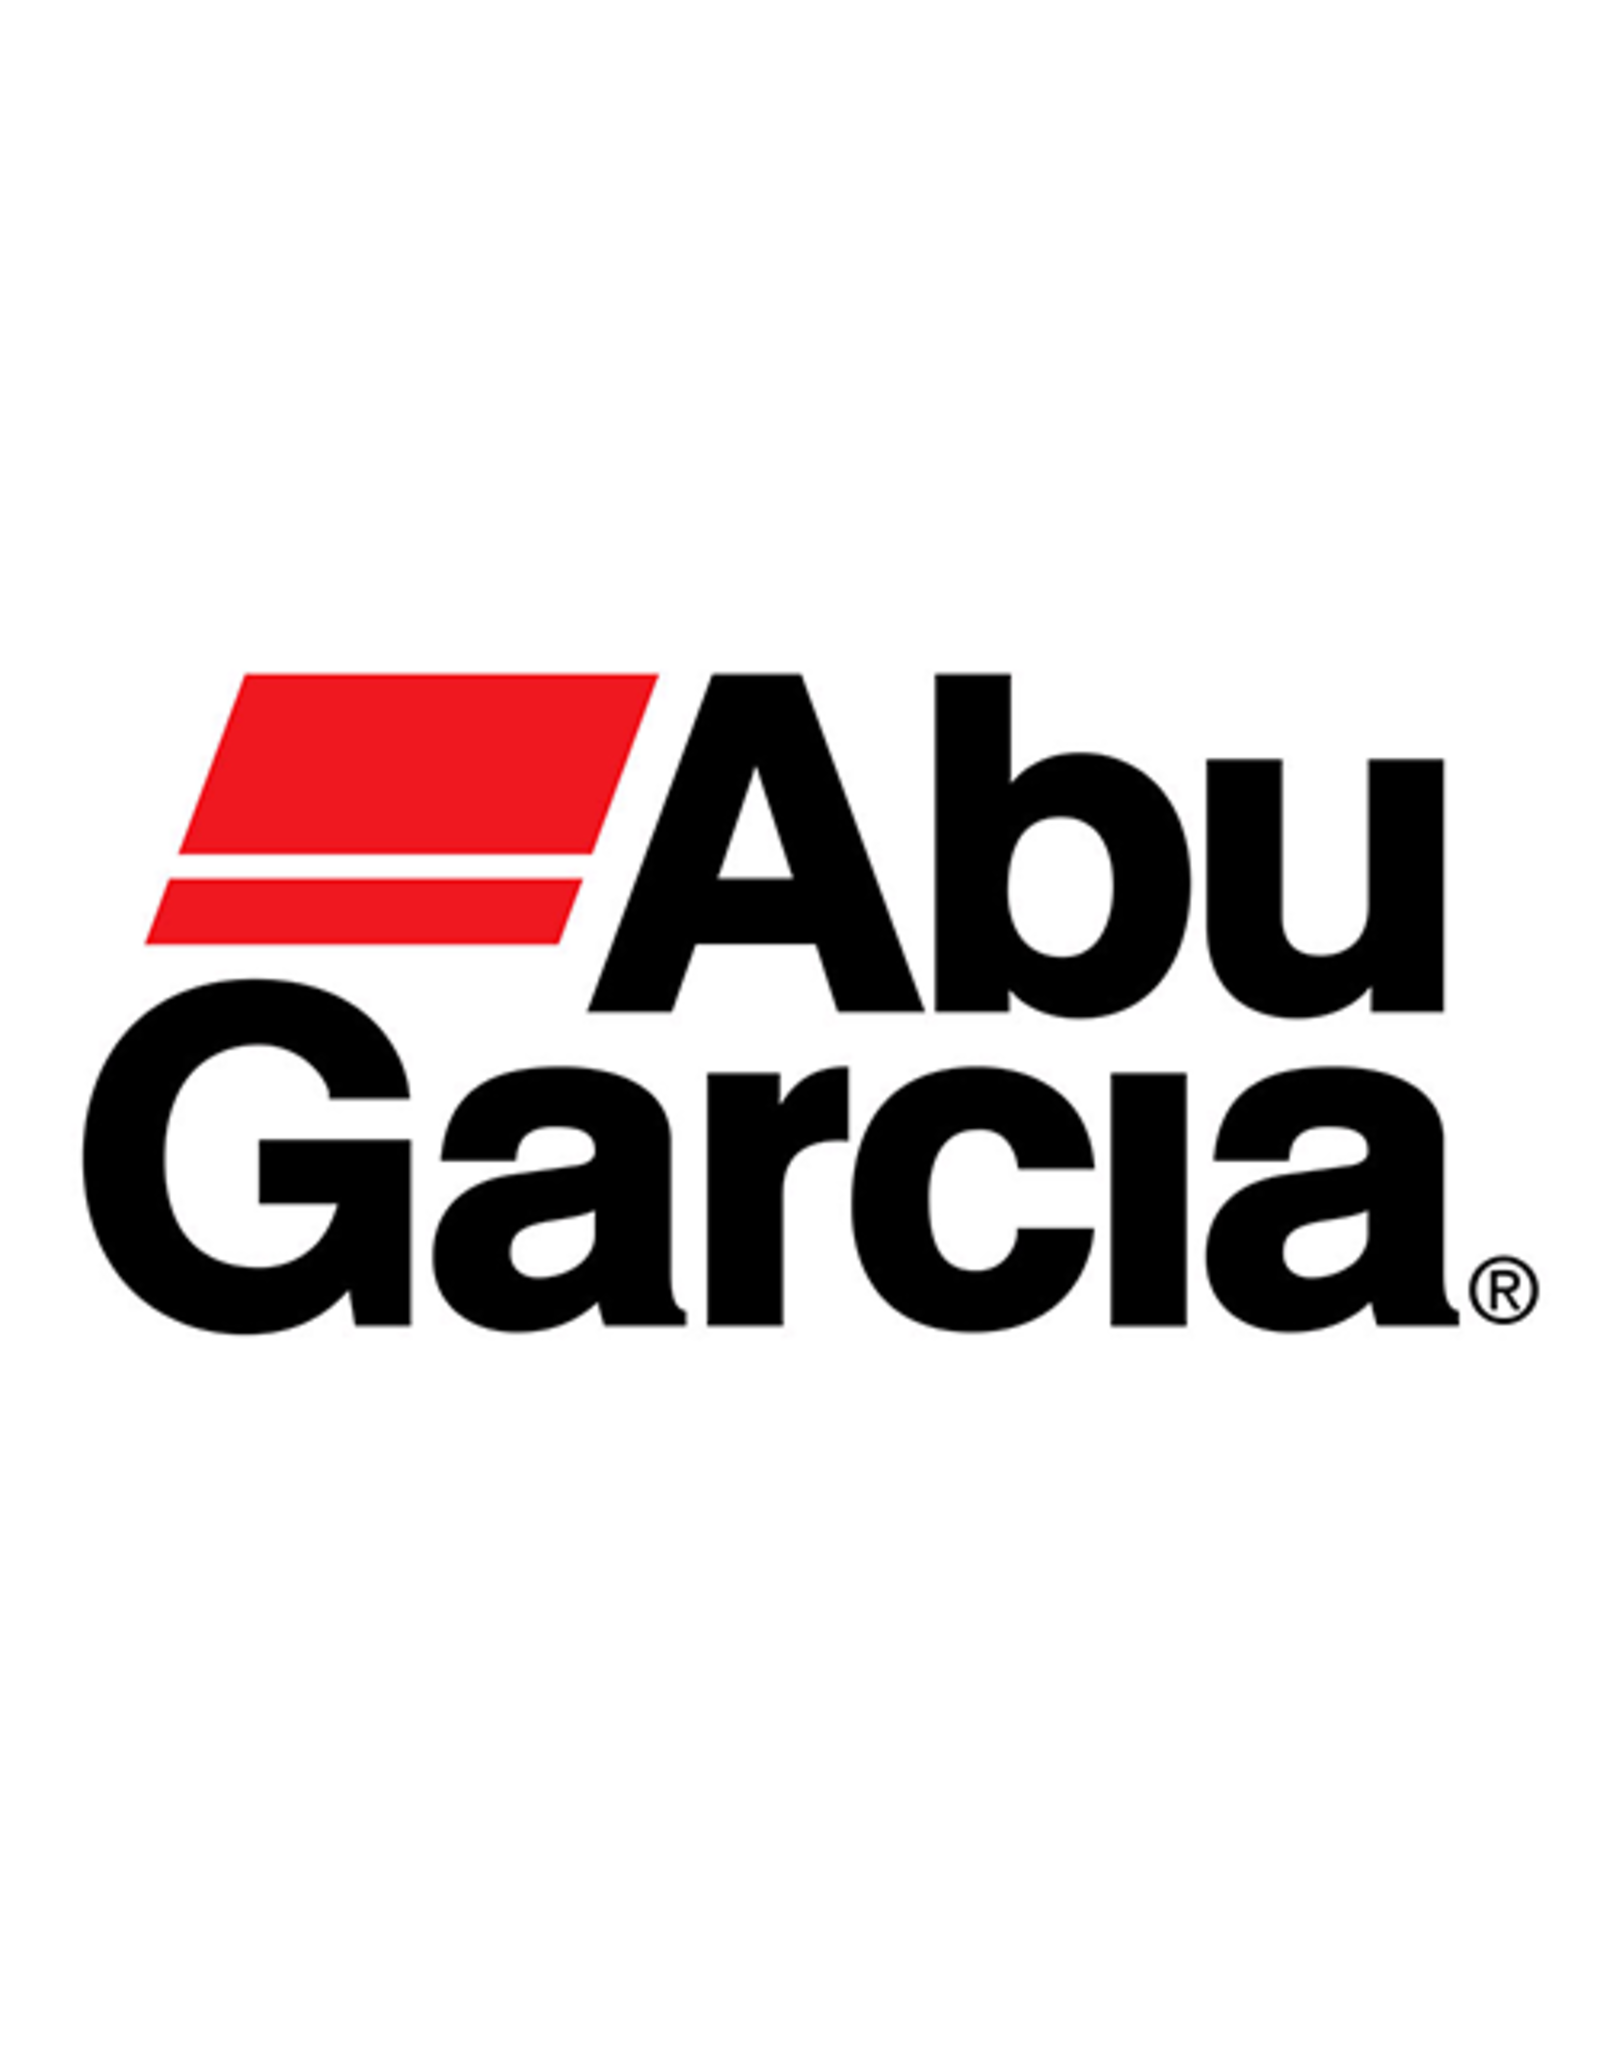 Abu Garcia 9085115  PINION GEAR/ NLA